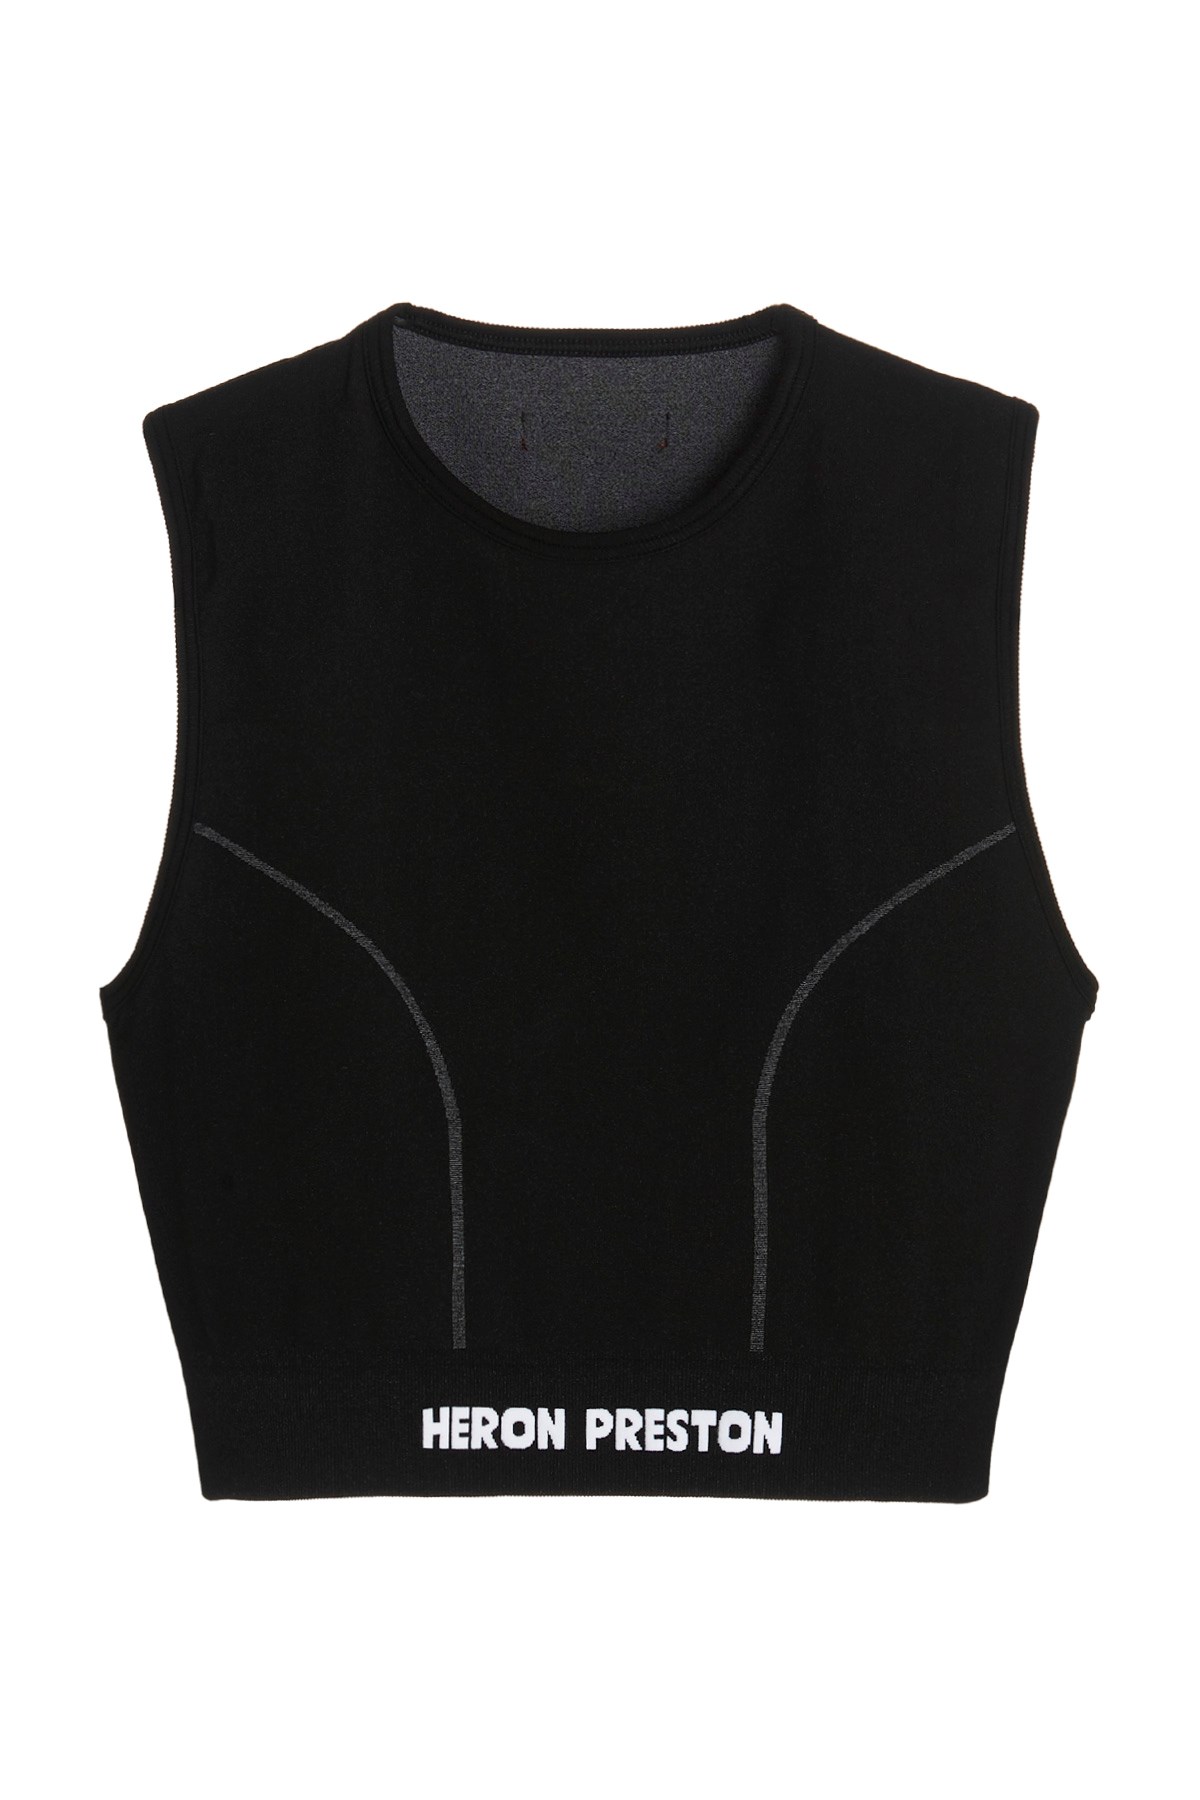 HERON PRESTON 'Active’ Top